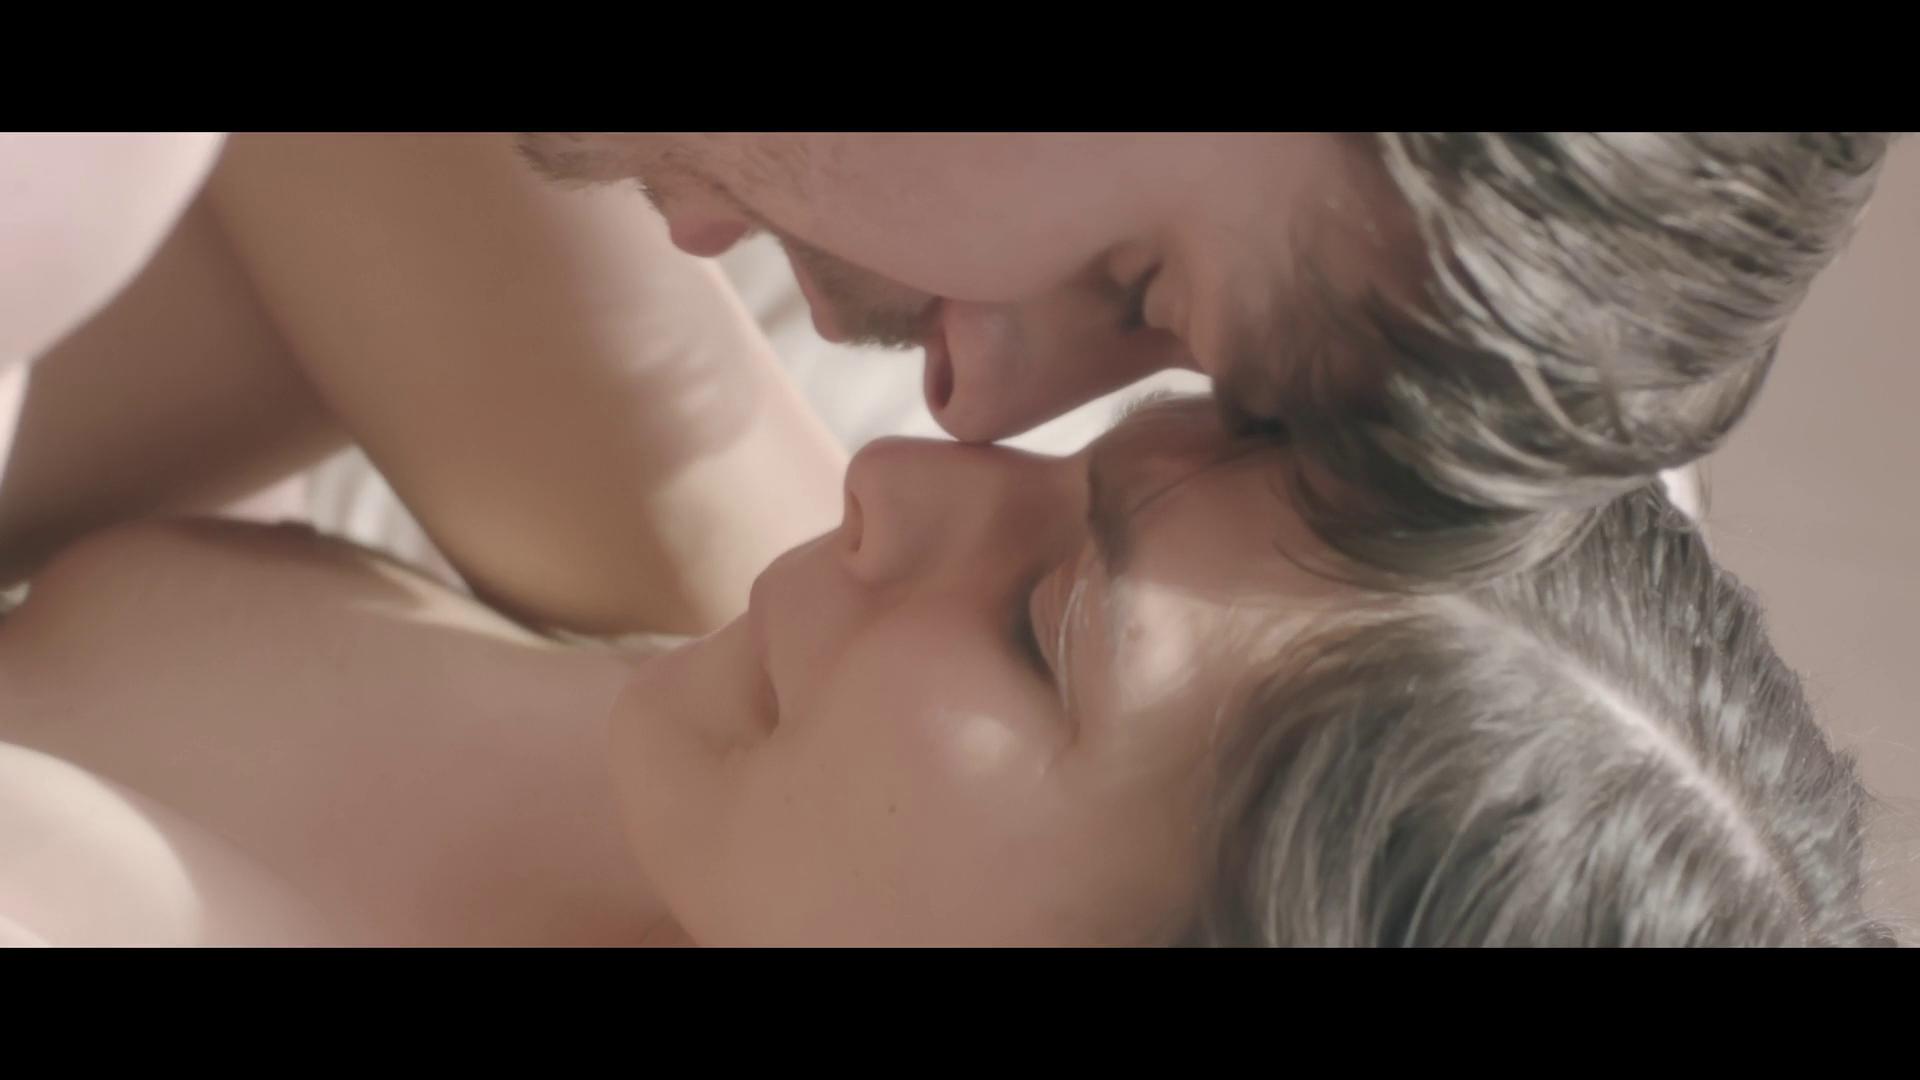 Erotic & sensual video